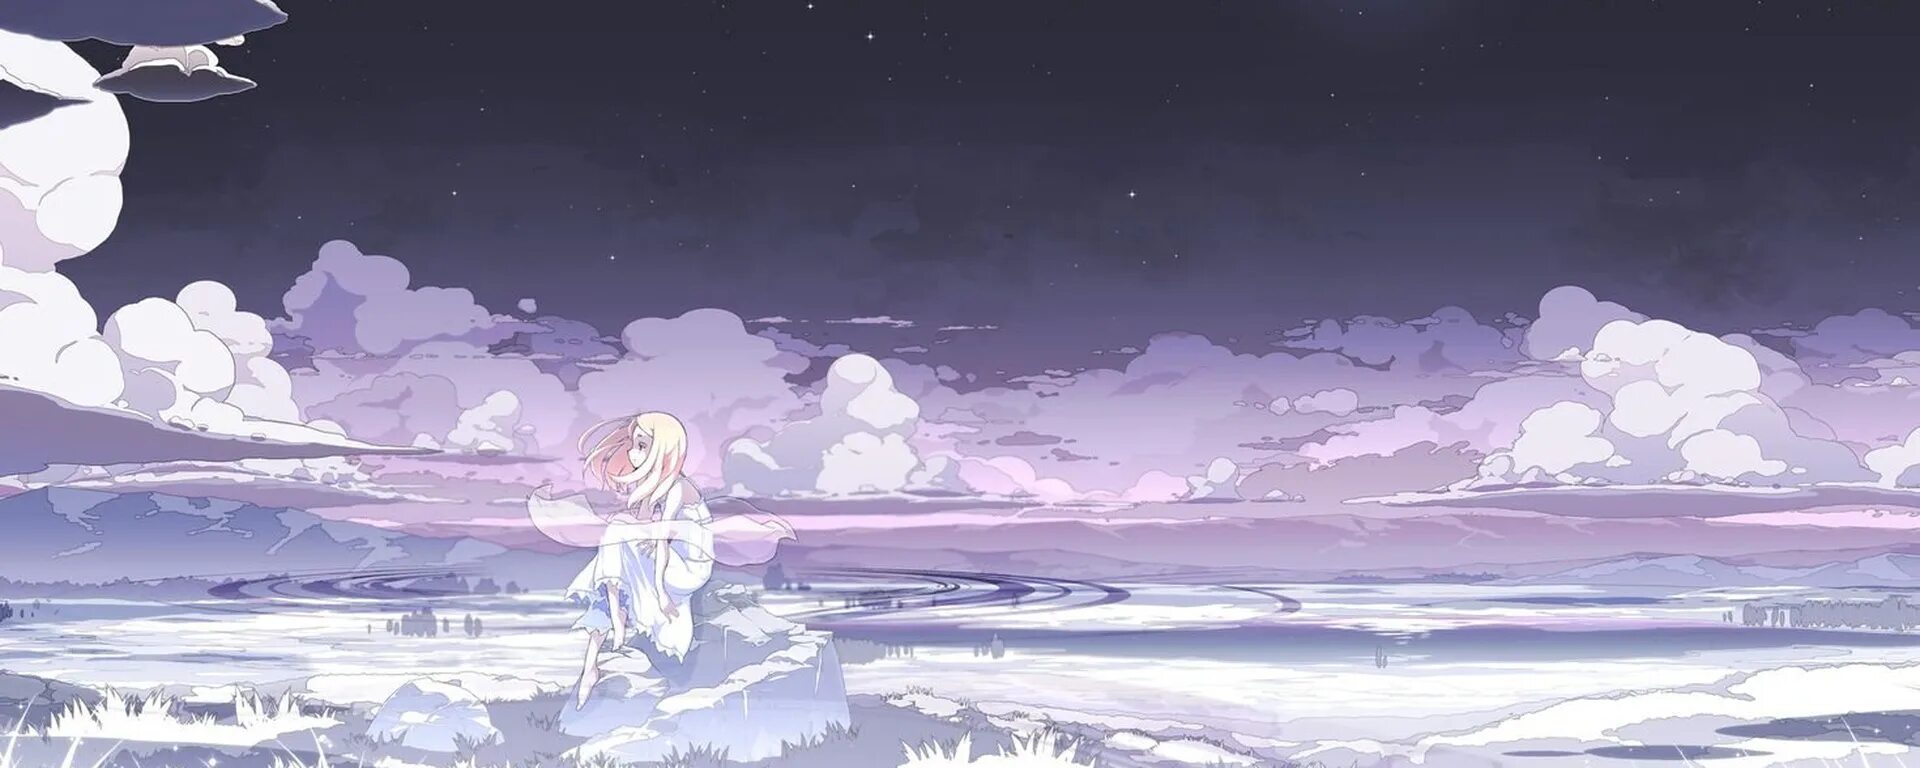 Манга рассвет облака река 59. Луна. Final Fantasy background.